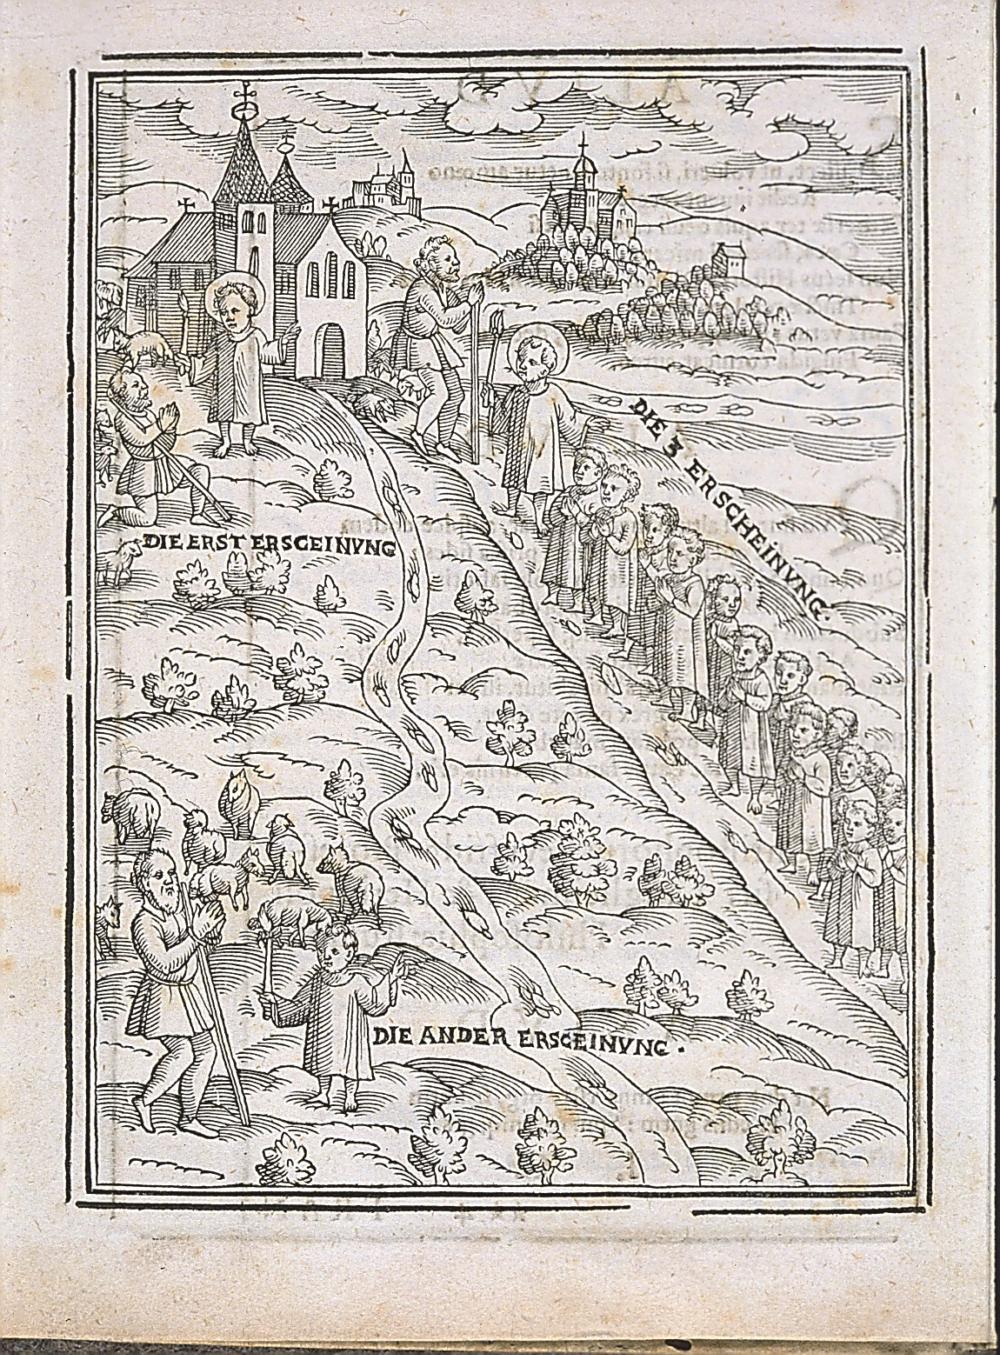 Abb. 2: Die drei Erscheinungen des Schäfers, Hermann Leicht in Frankenthal, der Ursprung des Wallfahrtsortes Vierzehnheiligen. Holzschnitt aus dem Wallfahrtsbuch von 1596